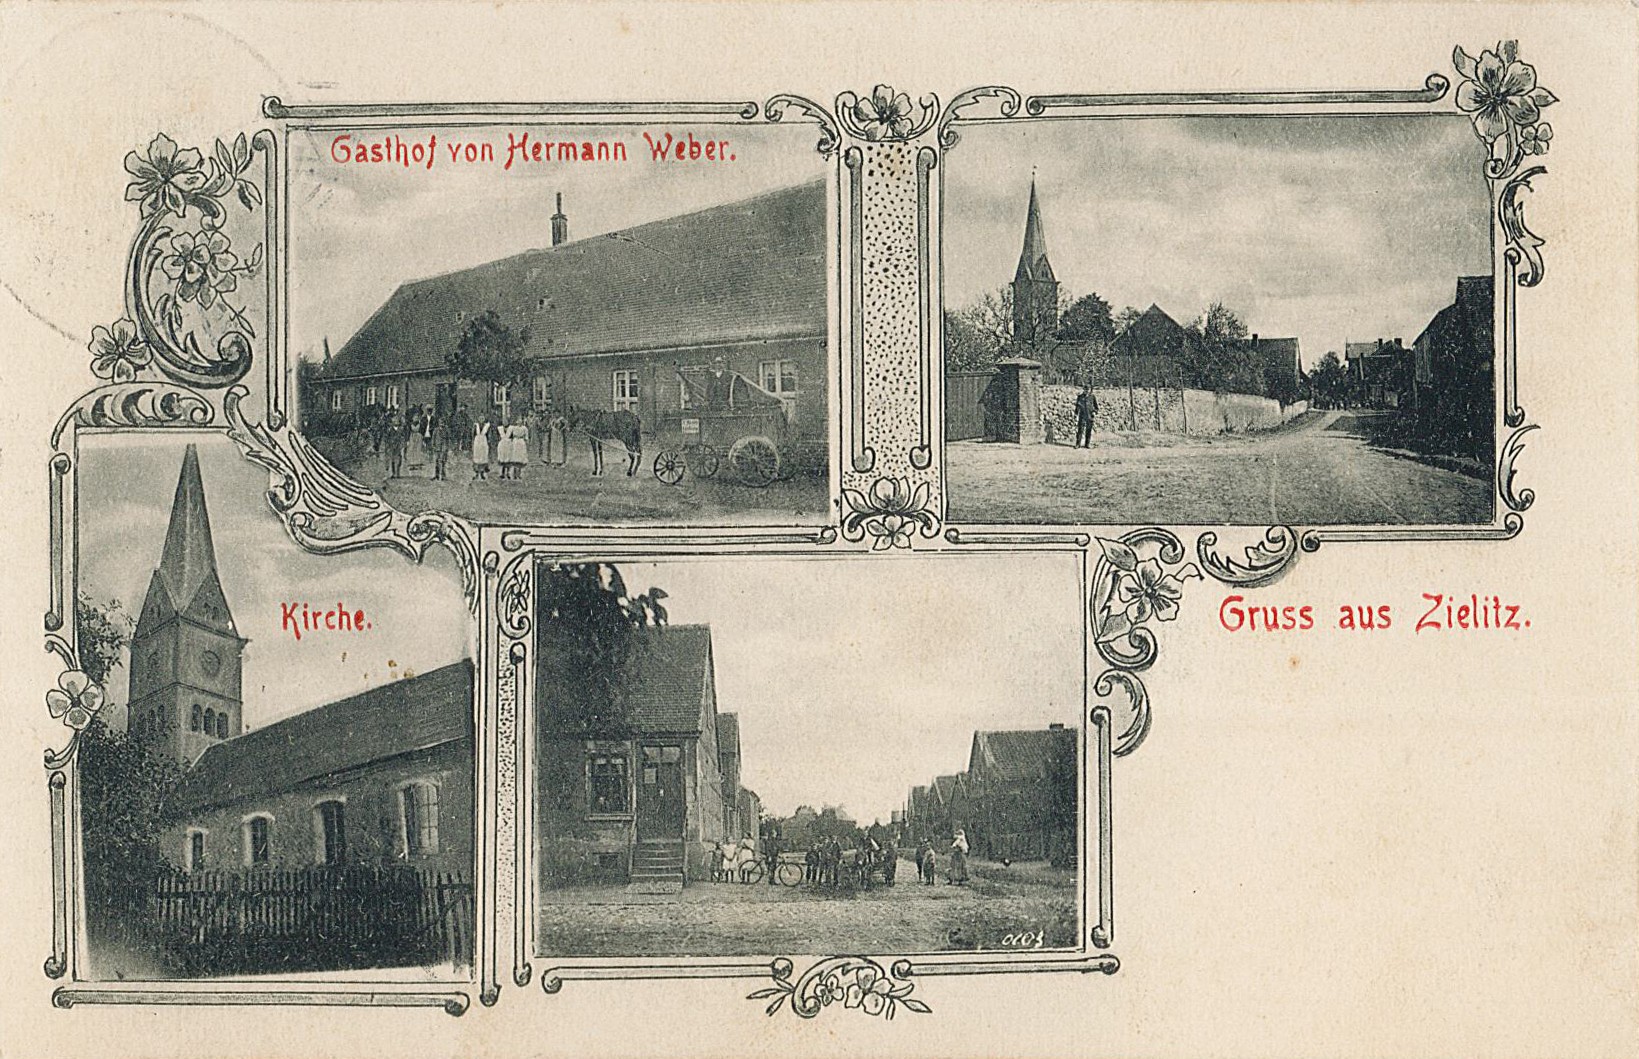 Postkarte "Gruss aus Zielitz", 15.08.1916 (Museum Wolmirstedt RR-F)